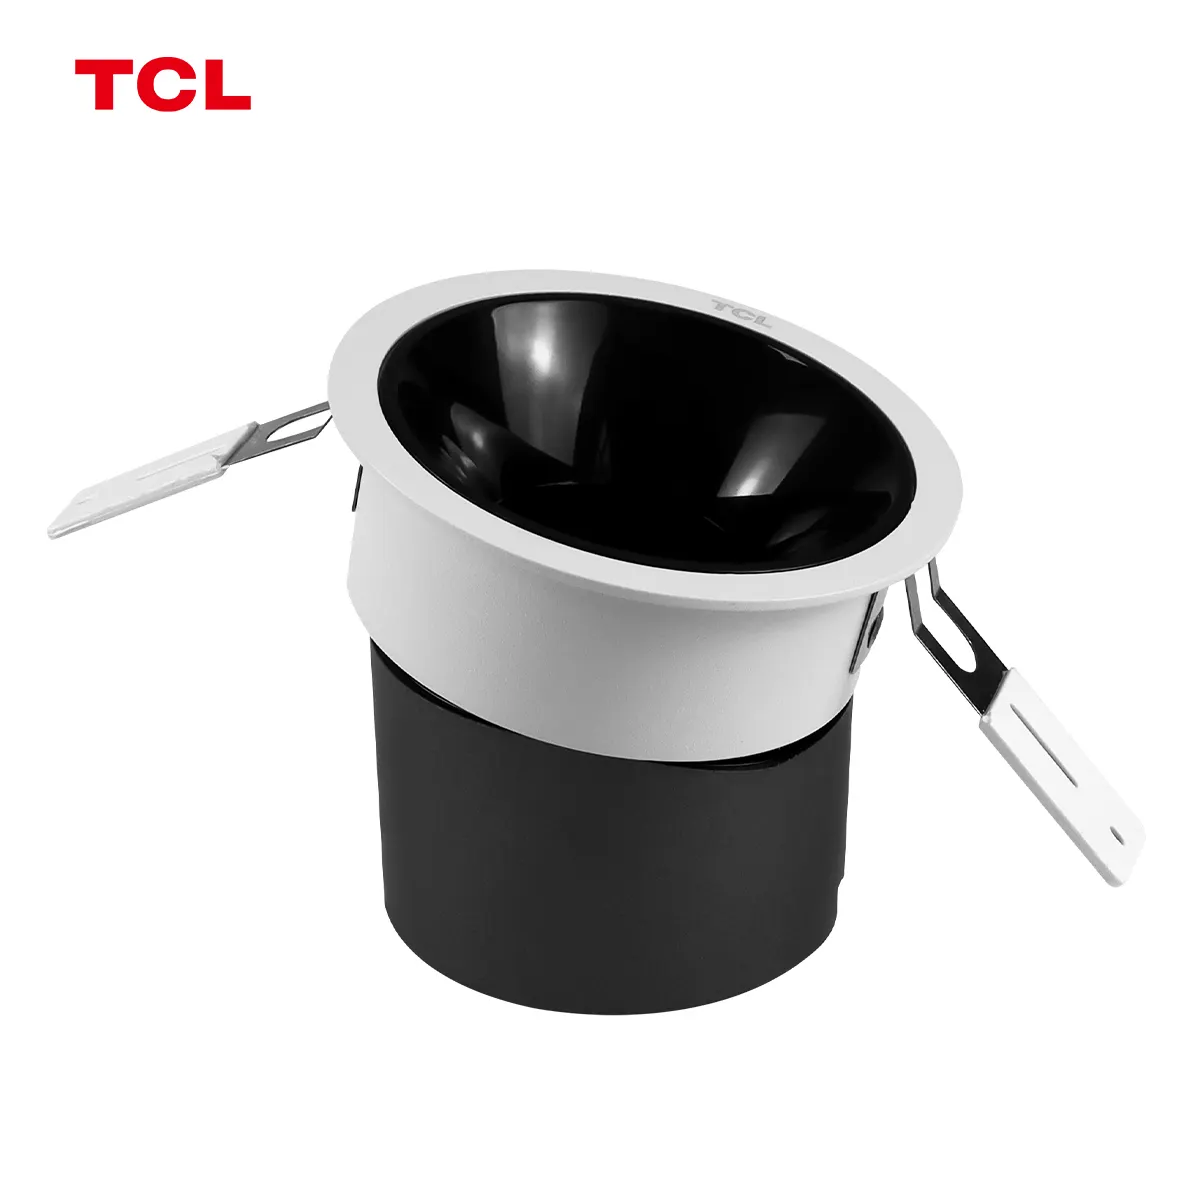 TCL lampu sorot led alami, lampu sorot tersembunyi 9W 3000K/4000K/6500K untuk dapur rumah kantor